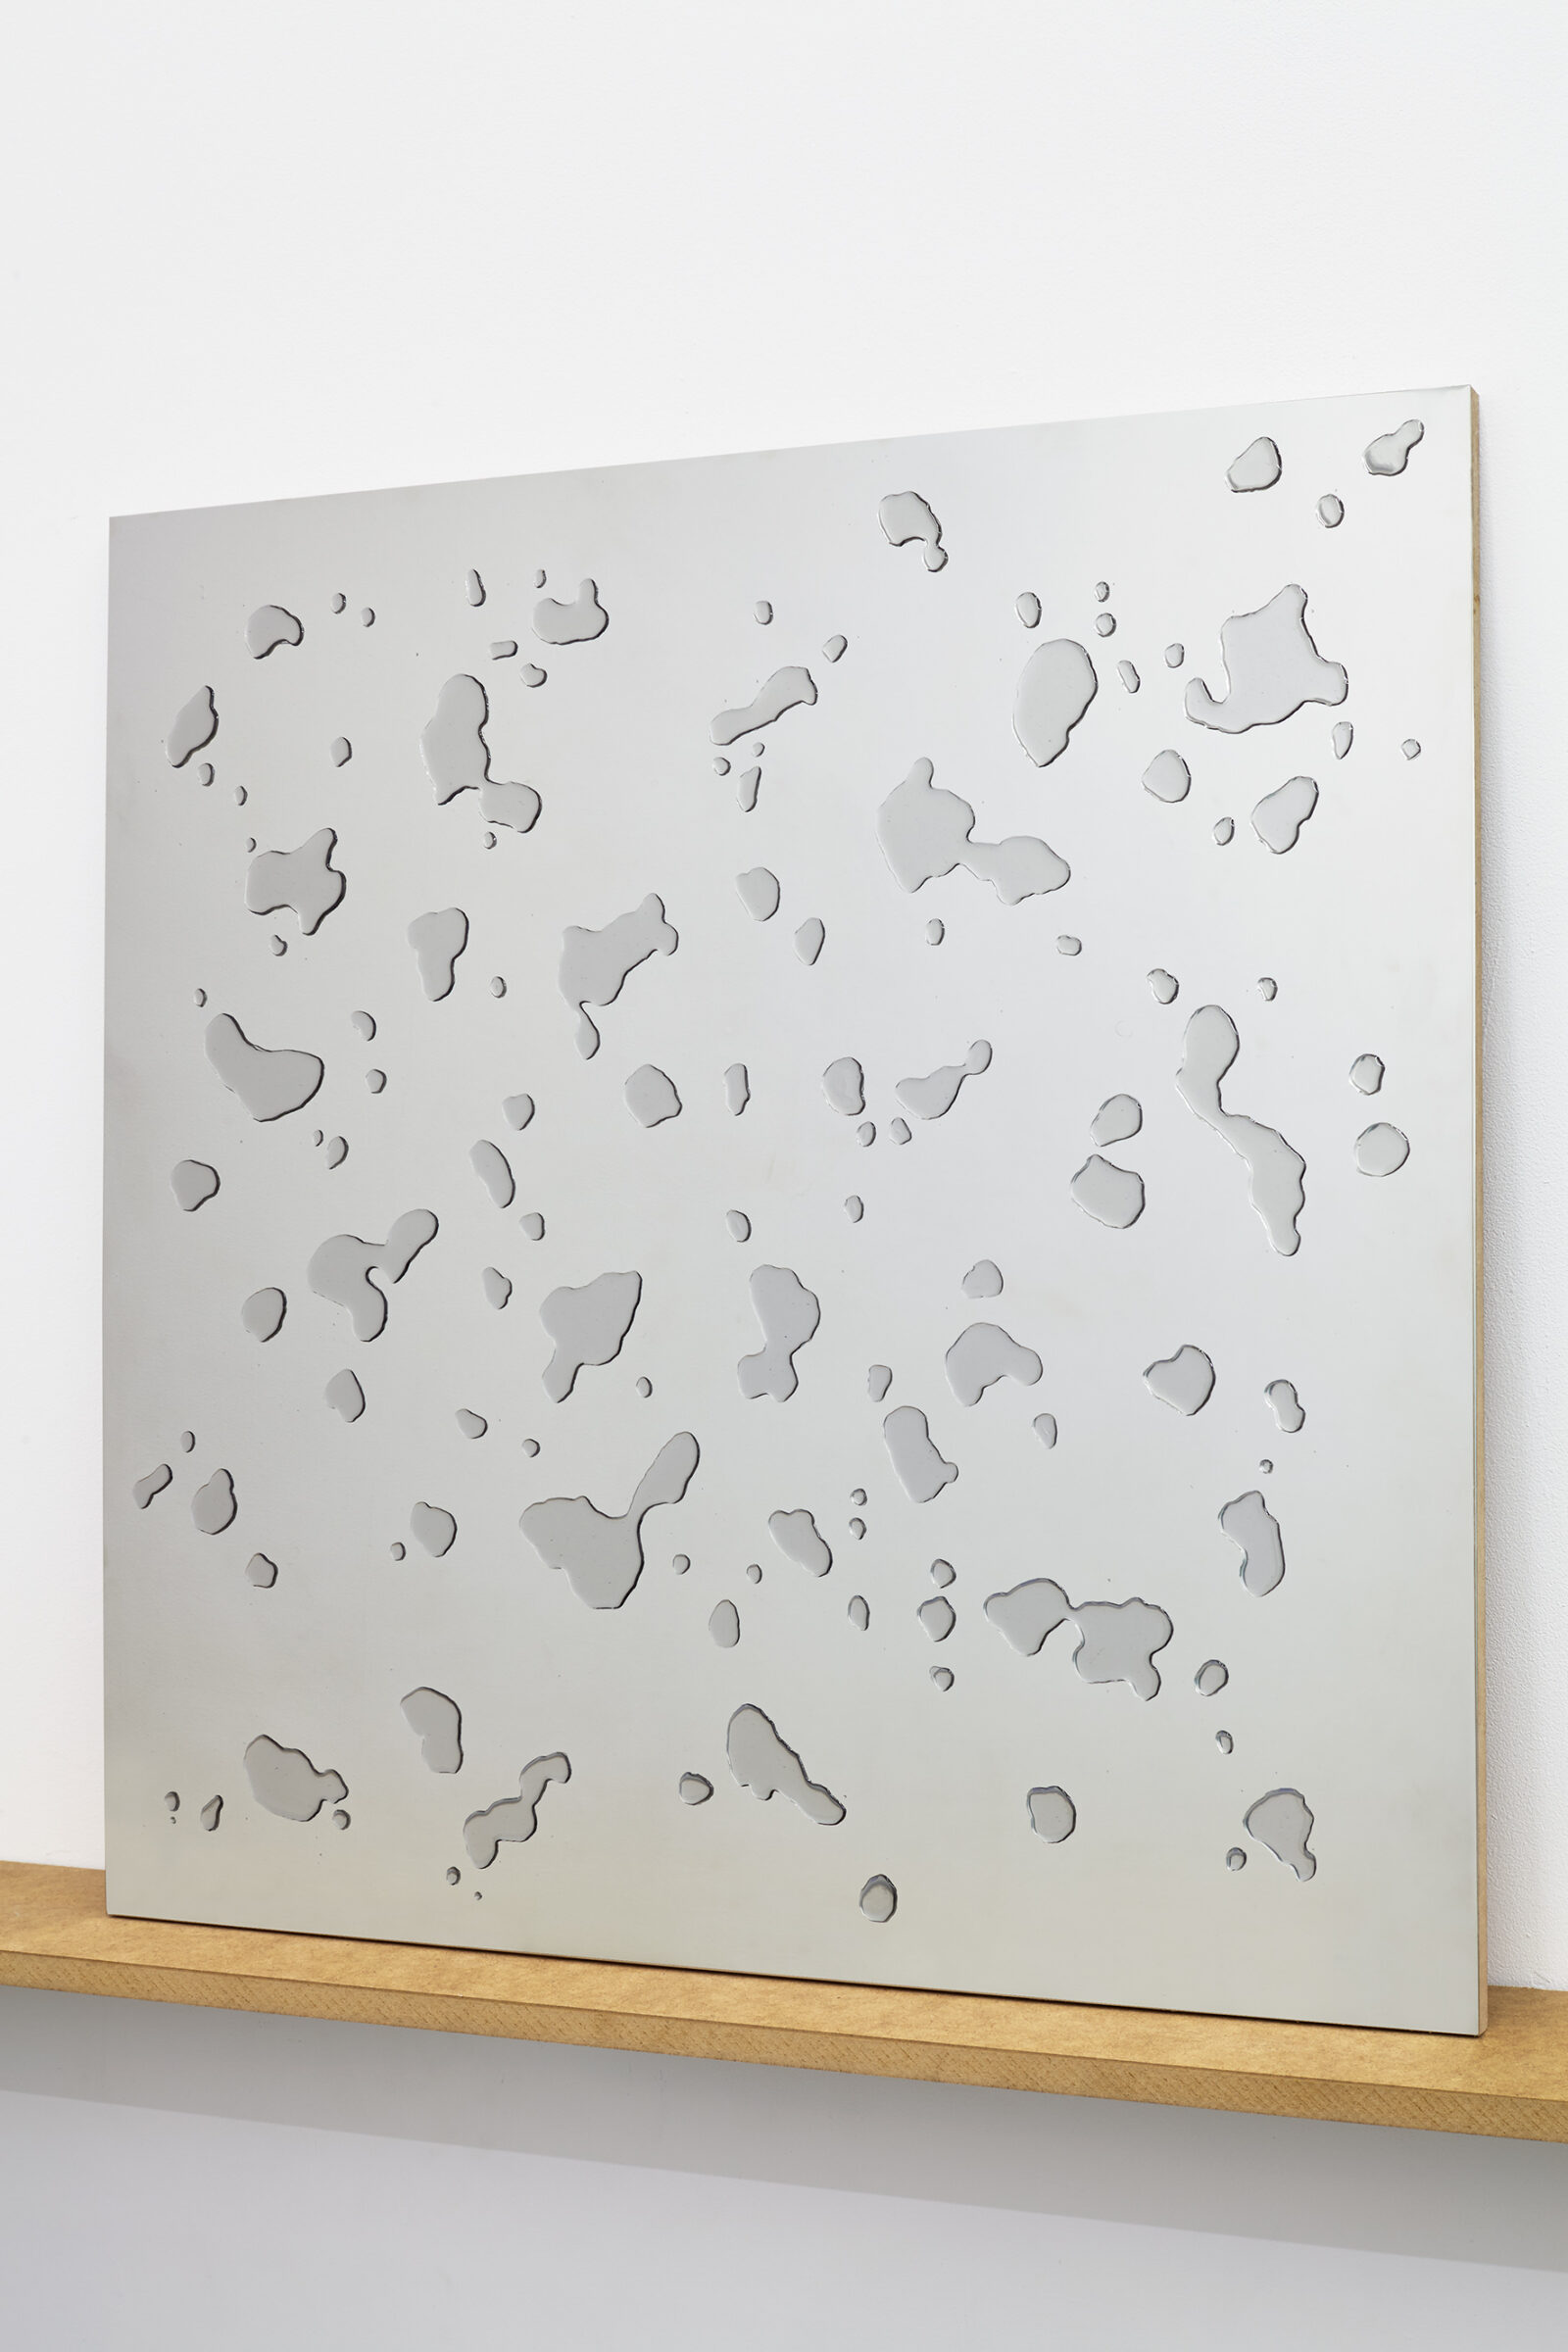 Katarzyna Przezwańska
Untitled
2015
stainless steel, glaze varnish, MDF
72 × 72 cm